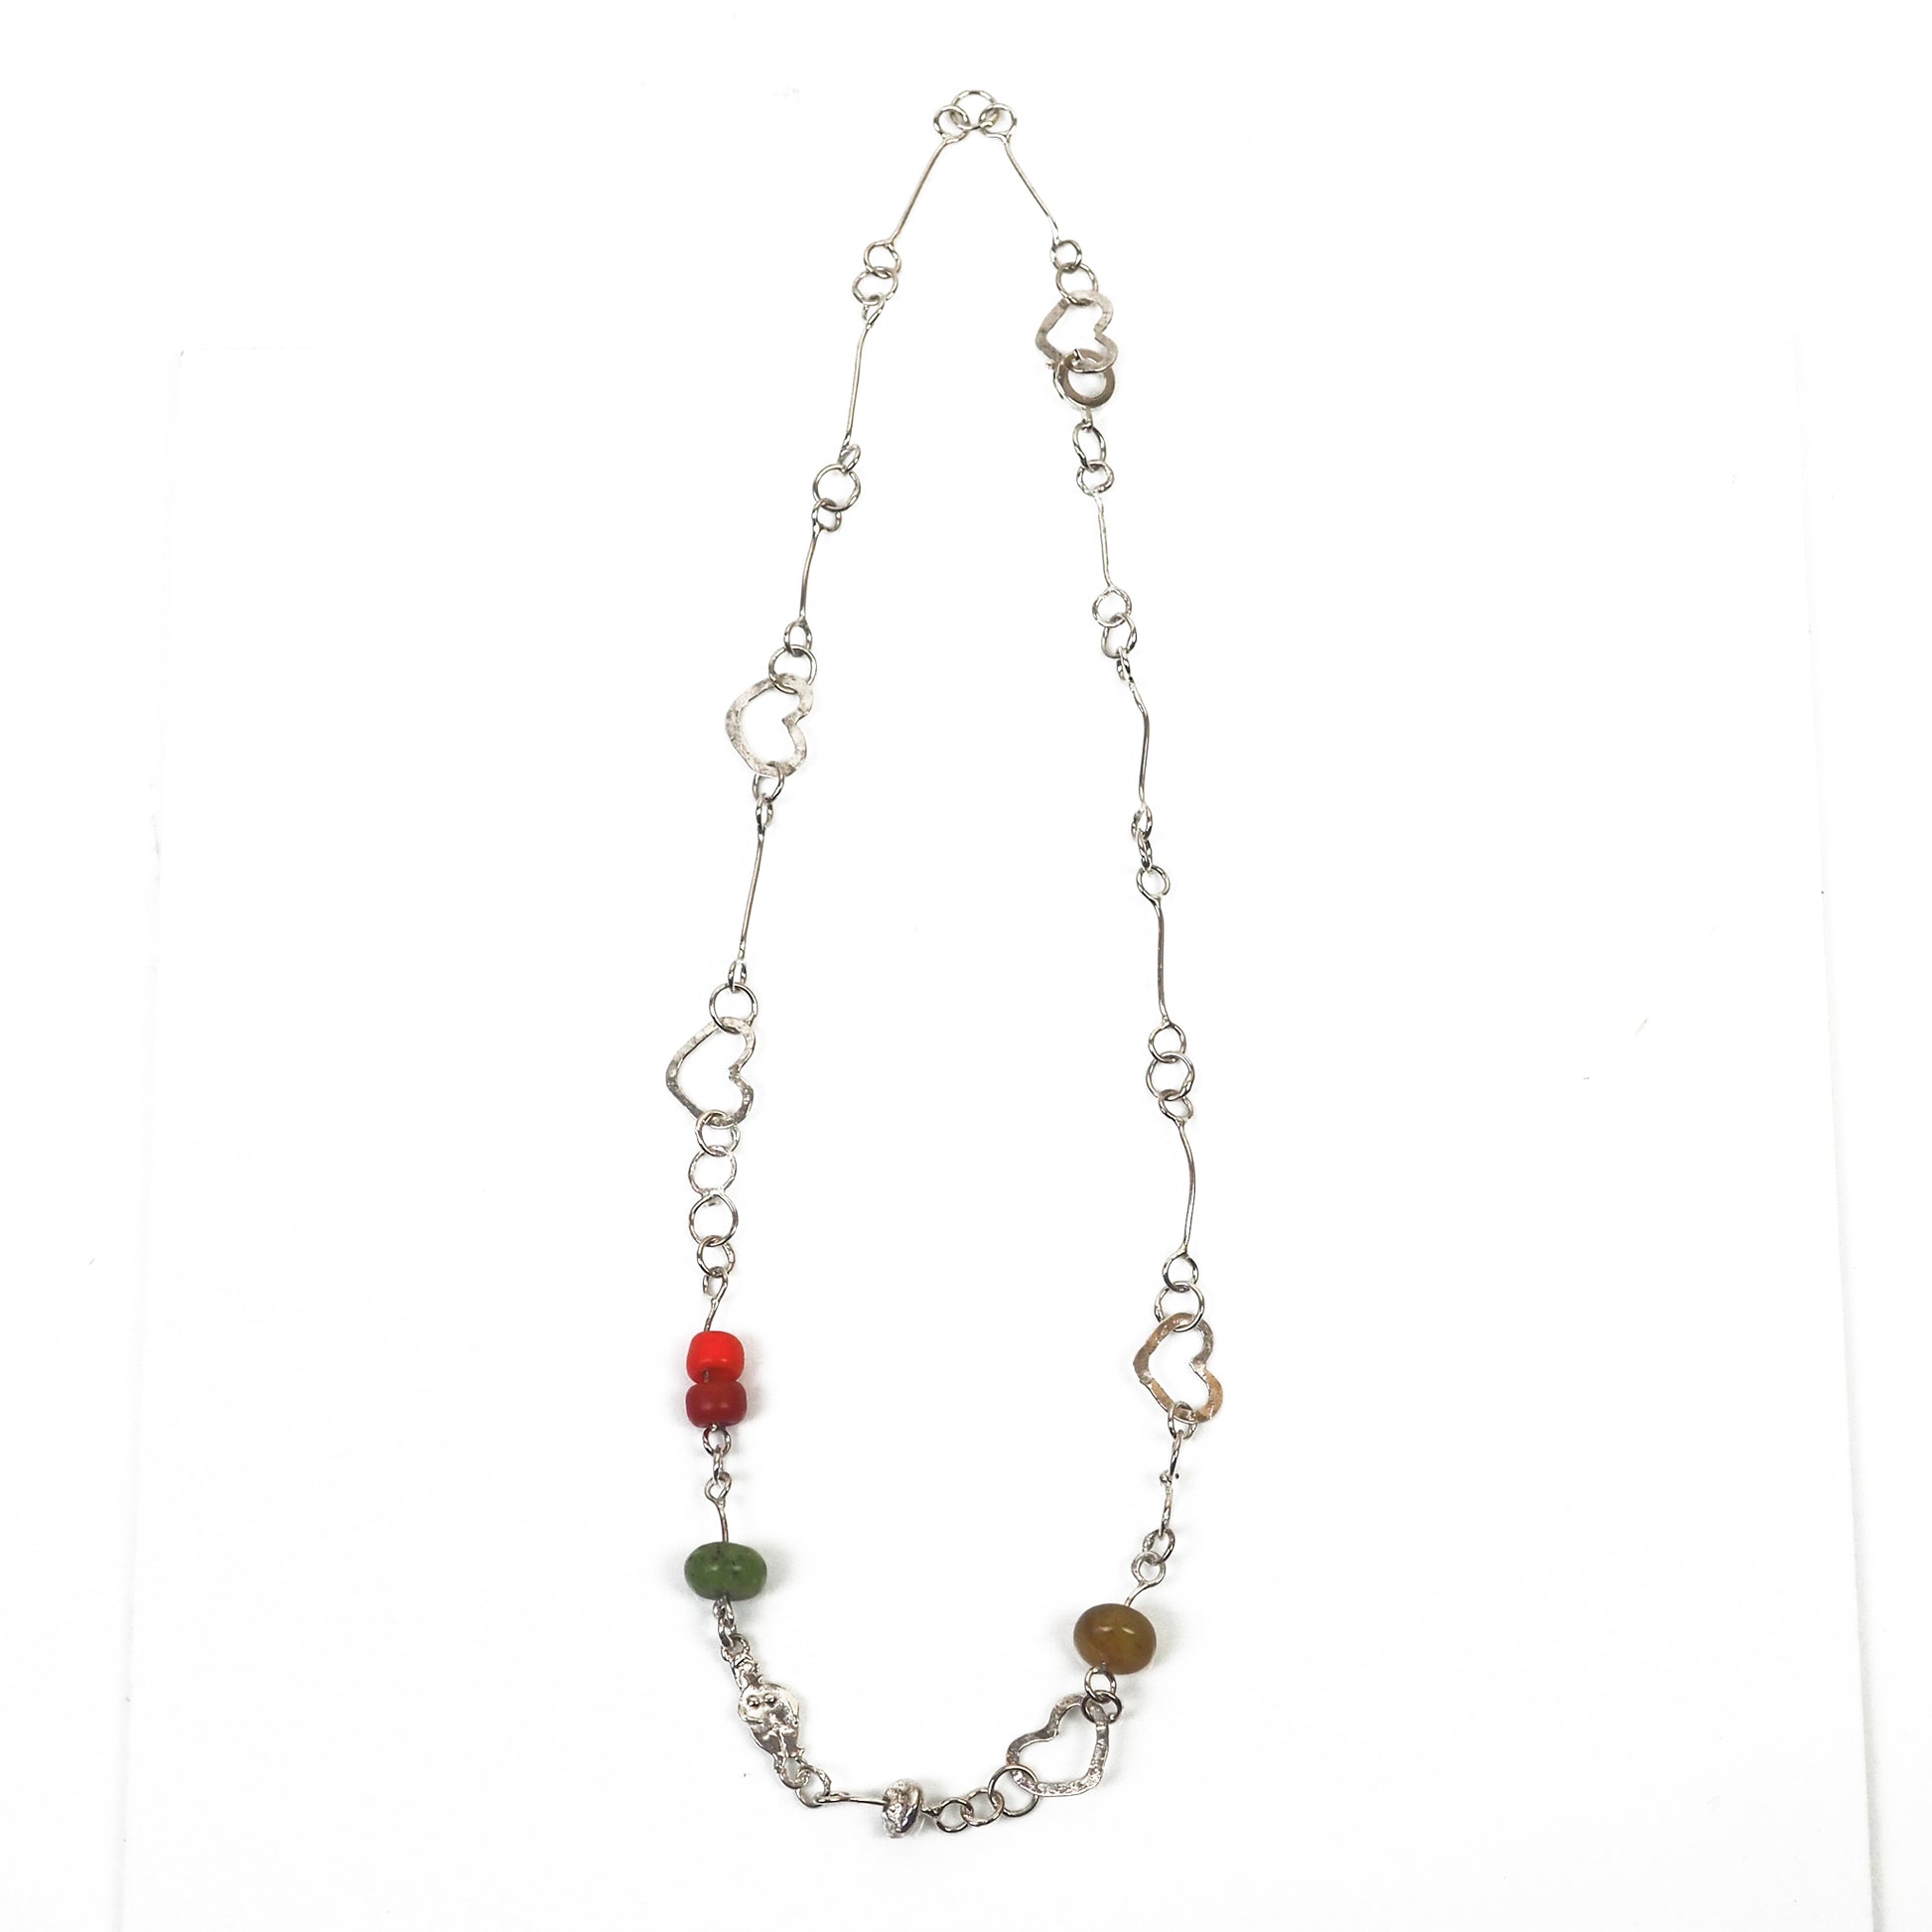 Pine, Jemima - Silver Necklace | Jemima Pine | Primavera Gallery